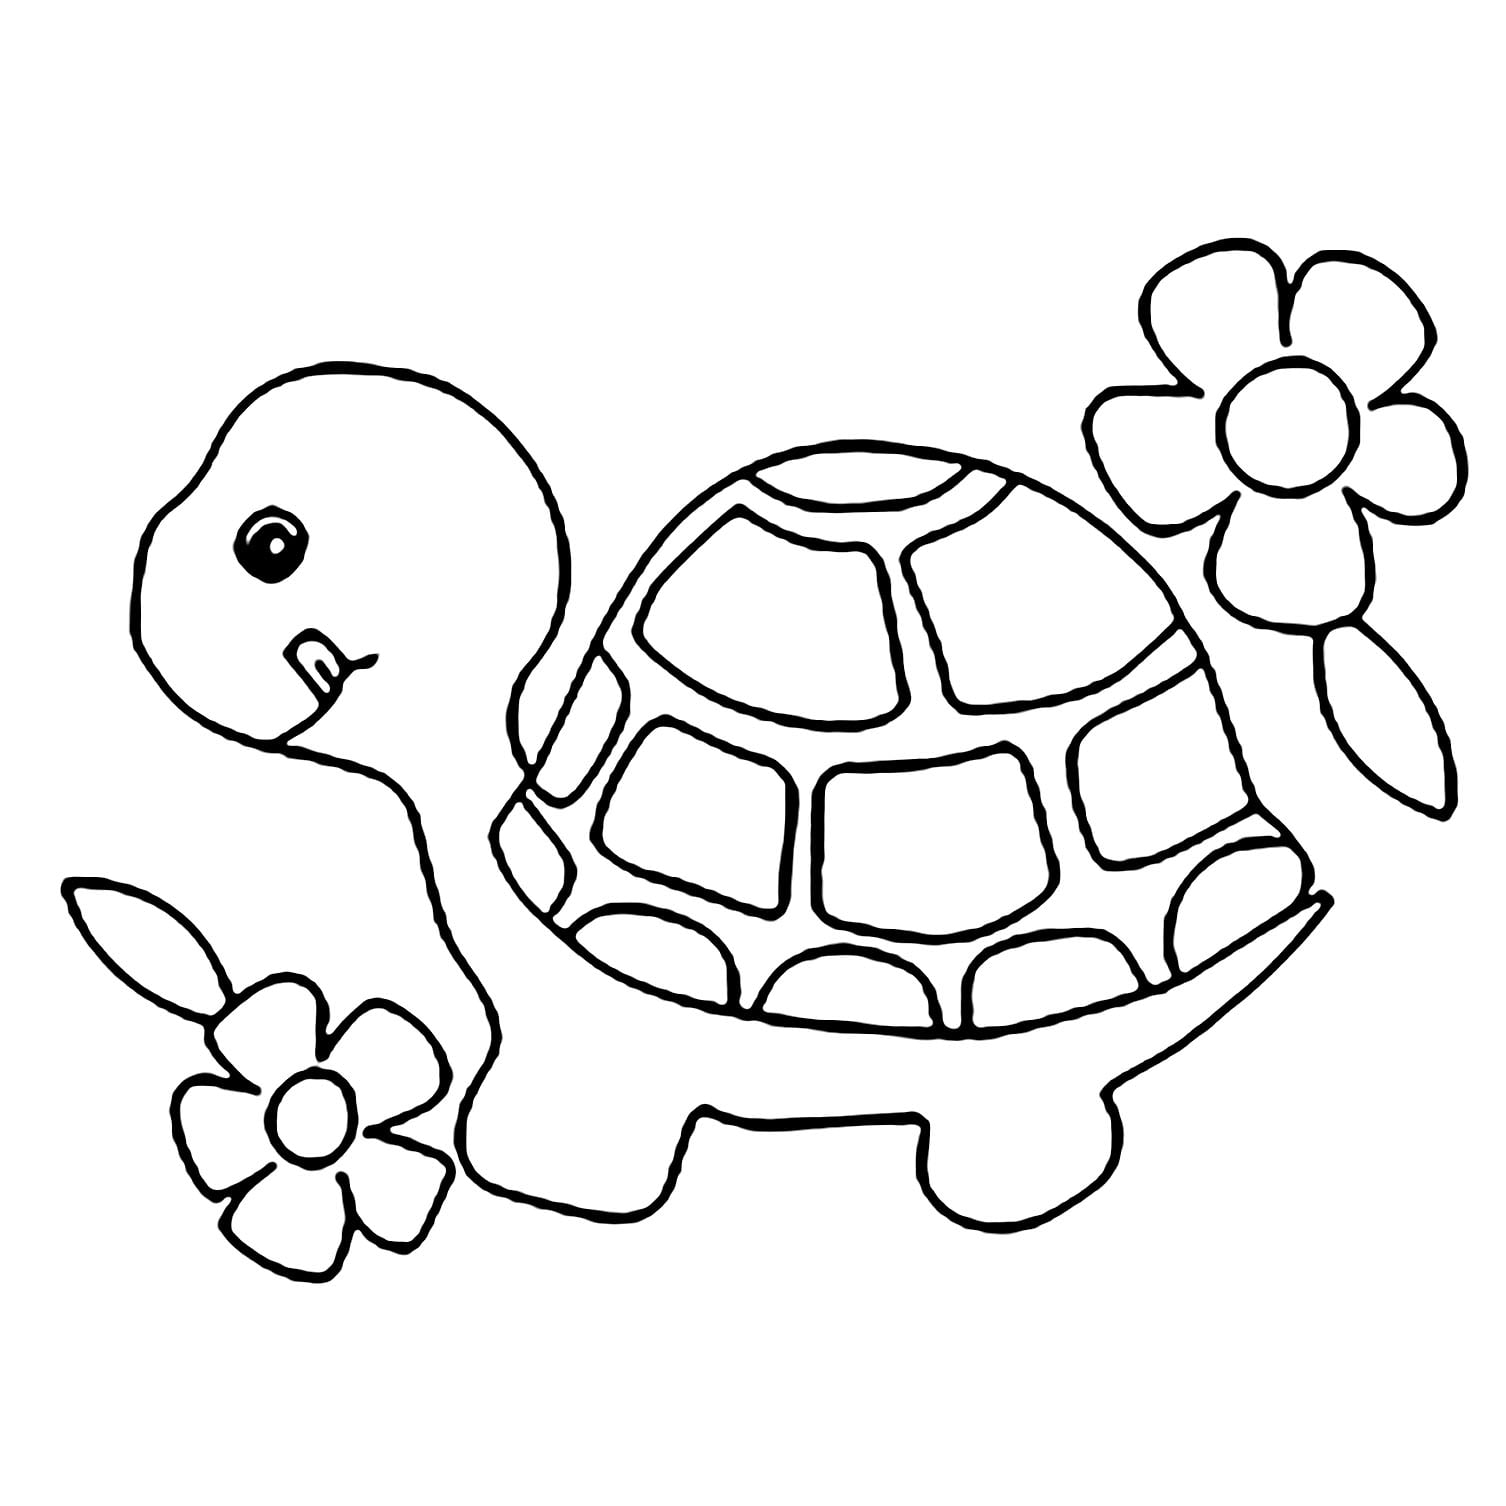 Con rùa luôn là một trong những đề tài được yêu thích trong nghệ thuật. Hãy cùng đắm mình trong vẻ đẹp hoang dã của loài rùa thông qua bức hình vẽ chân thật và tinh tế này.